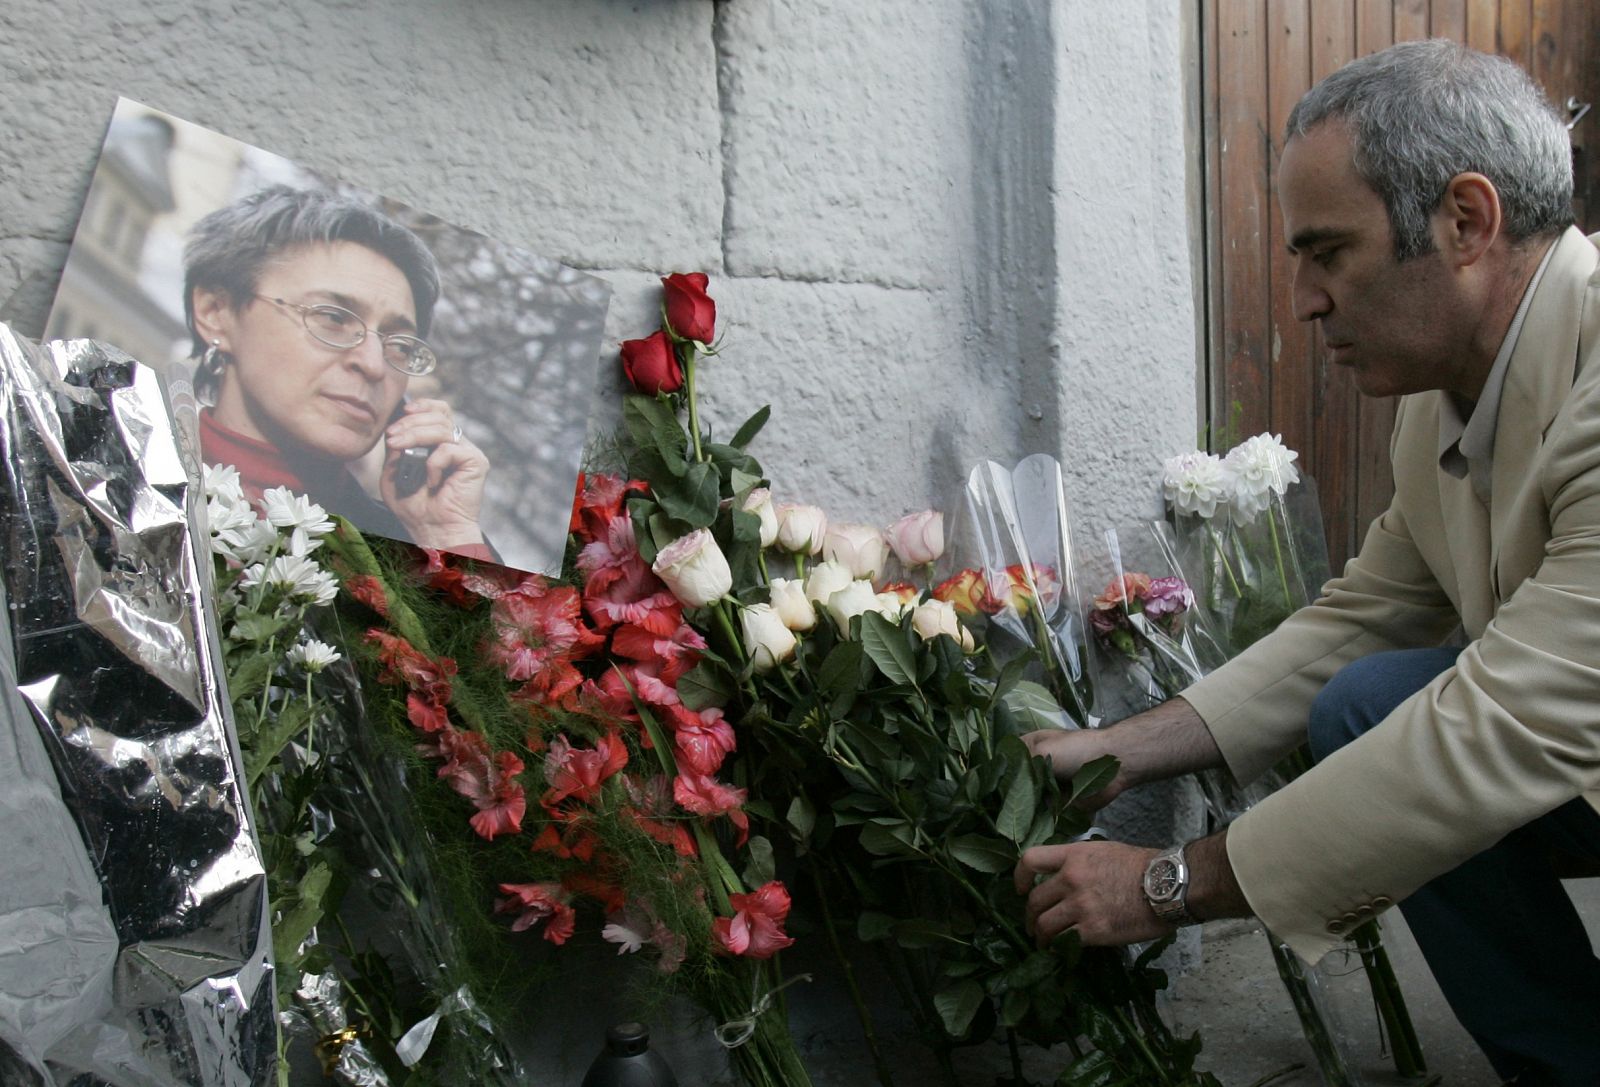 El ajedrecista Gary Kasparov, opositor de Vladimir Putin, deposita flores en el apartamento de Politkovskaya con ocasión de su cumpleaños en 2007.